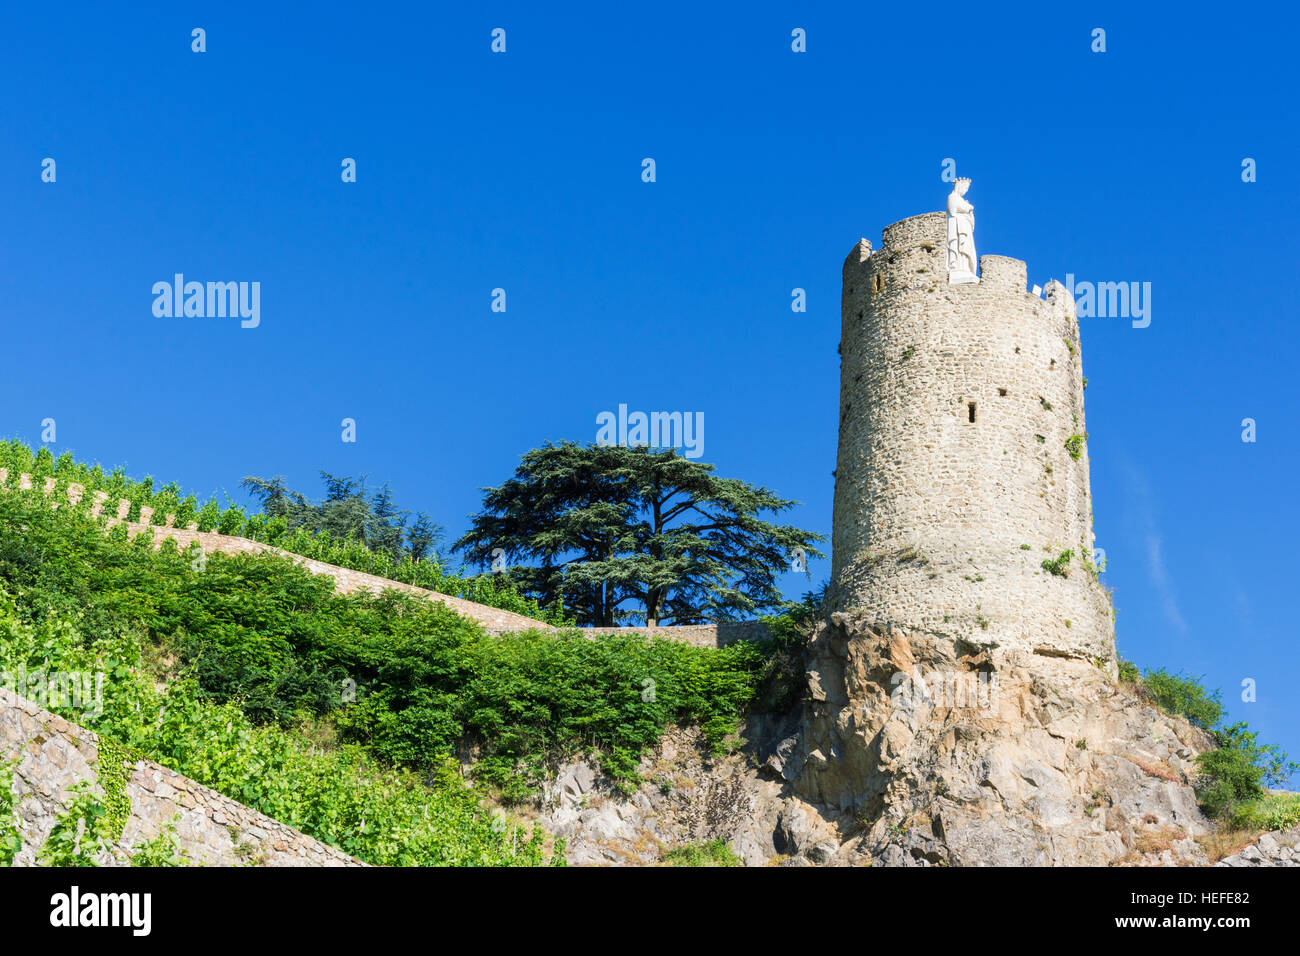 La torre di avvistamento cinquecentesca Tour de l Hôpital dominato da vigneti terrazzati sopra Tournon-sur-Rhône, Ardèche, Francia Foto Stock